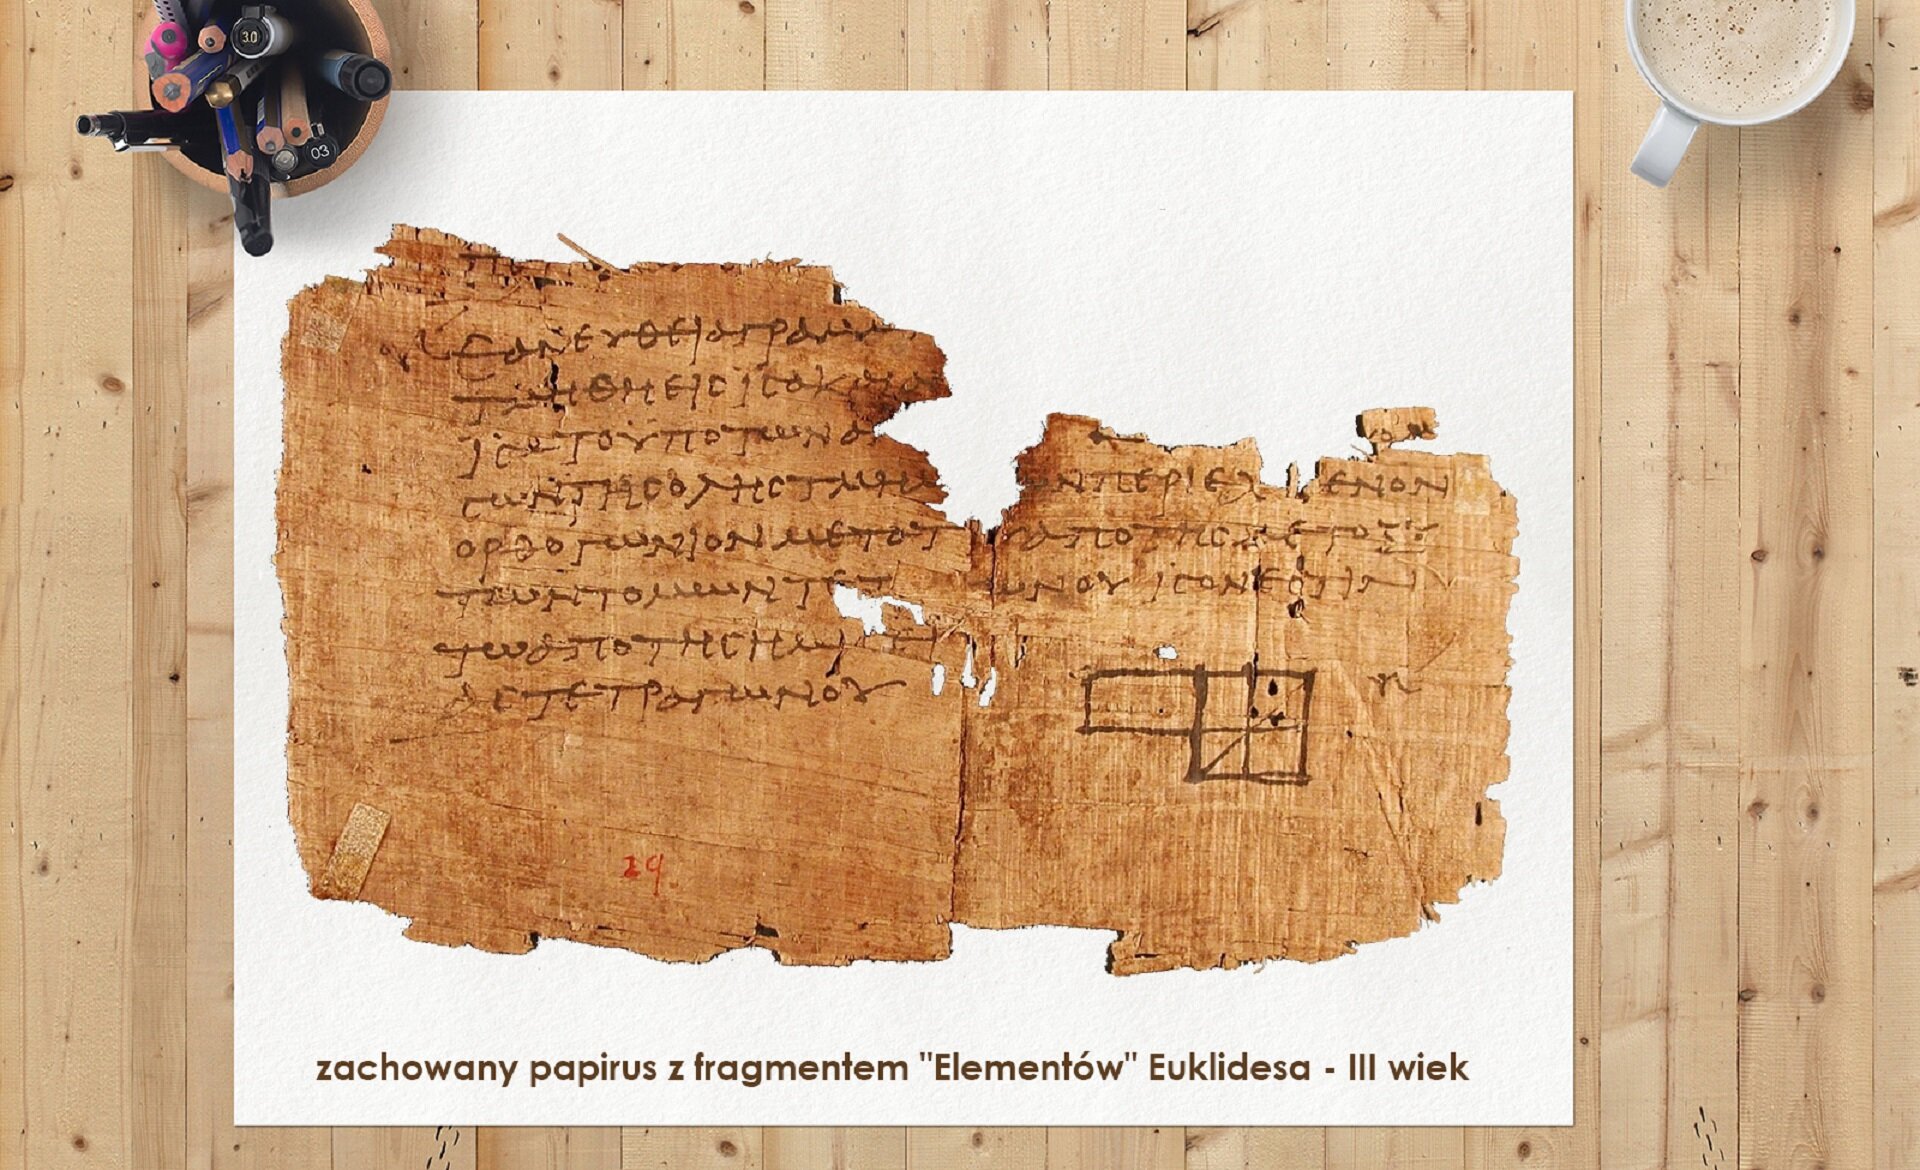 Ilustracja przedstawia sfotografowaną z góry drewnianą płaszczyznę wykonaną z jasnych desek. Na deskach leży biały arkusz. Na nim leży fragment wystrzępionego papirusu. Papirus pokryty jest pismem greckim. U dołu tekstu widać rysunki czworoboków. Na dole białego arkusza widnieje napis informujący czym jest pokazany papirus : „zachowany papirus z fragmentem „Elementów” Euklidesa – III wiek” Lewy górny róg białego arkusza dociśnięty jest do blatu kubkiem, w którym znajdują się kolorowe kredki, długopisy i pisaki. W prawym górnym rogu widać fragment filiżanki z kawą.